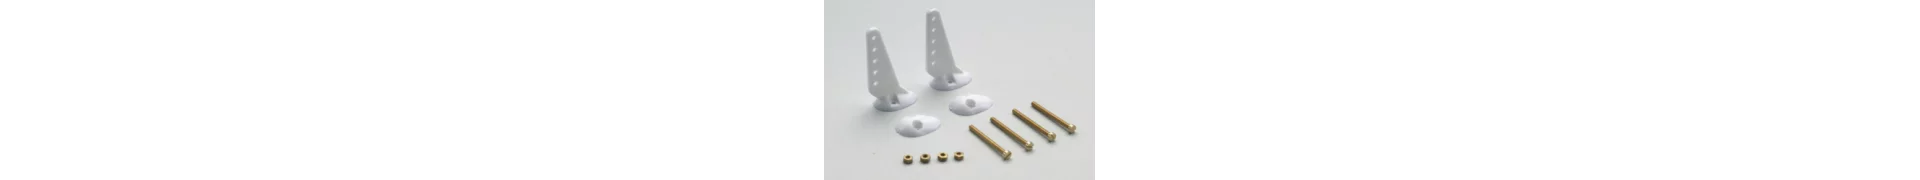 Schrauben und mechainsche Bauteile Gforce für Modellbau und Herstellung von Prototypen